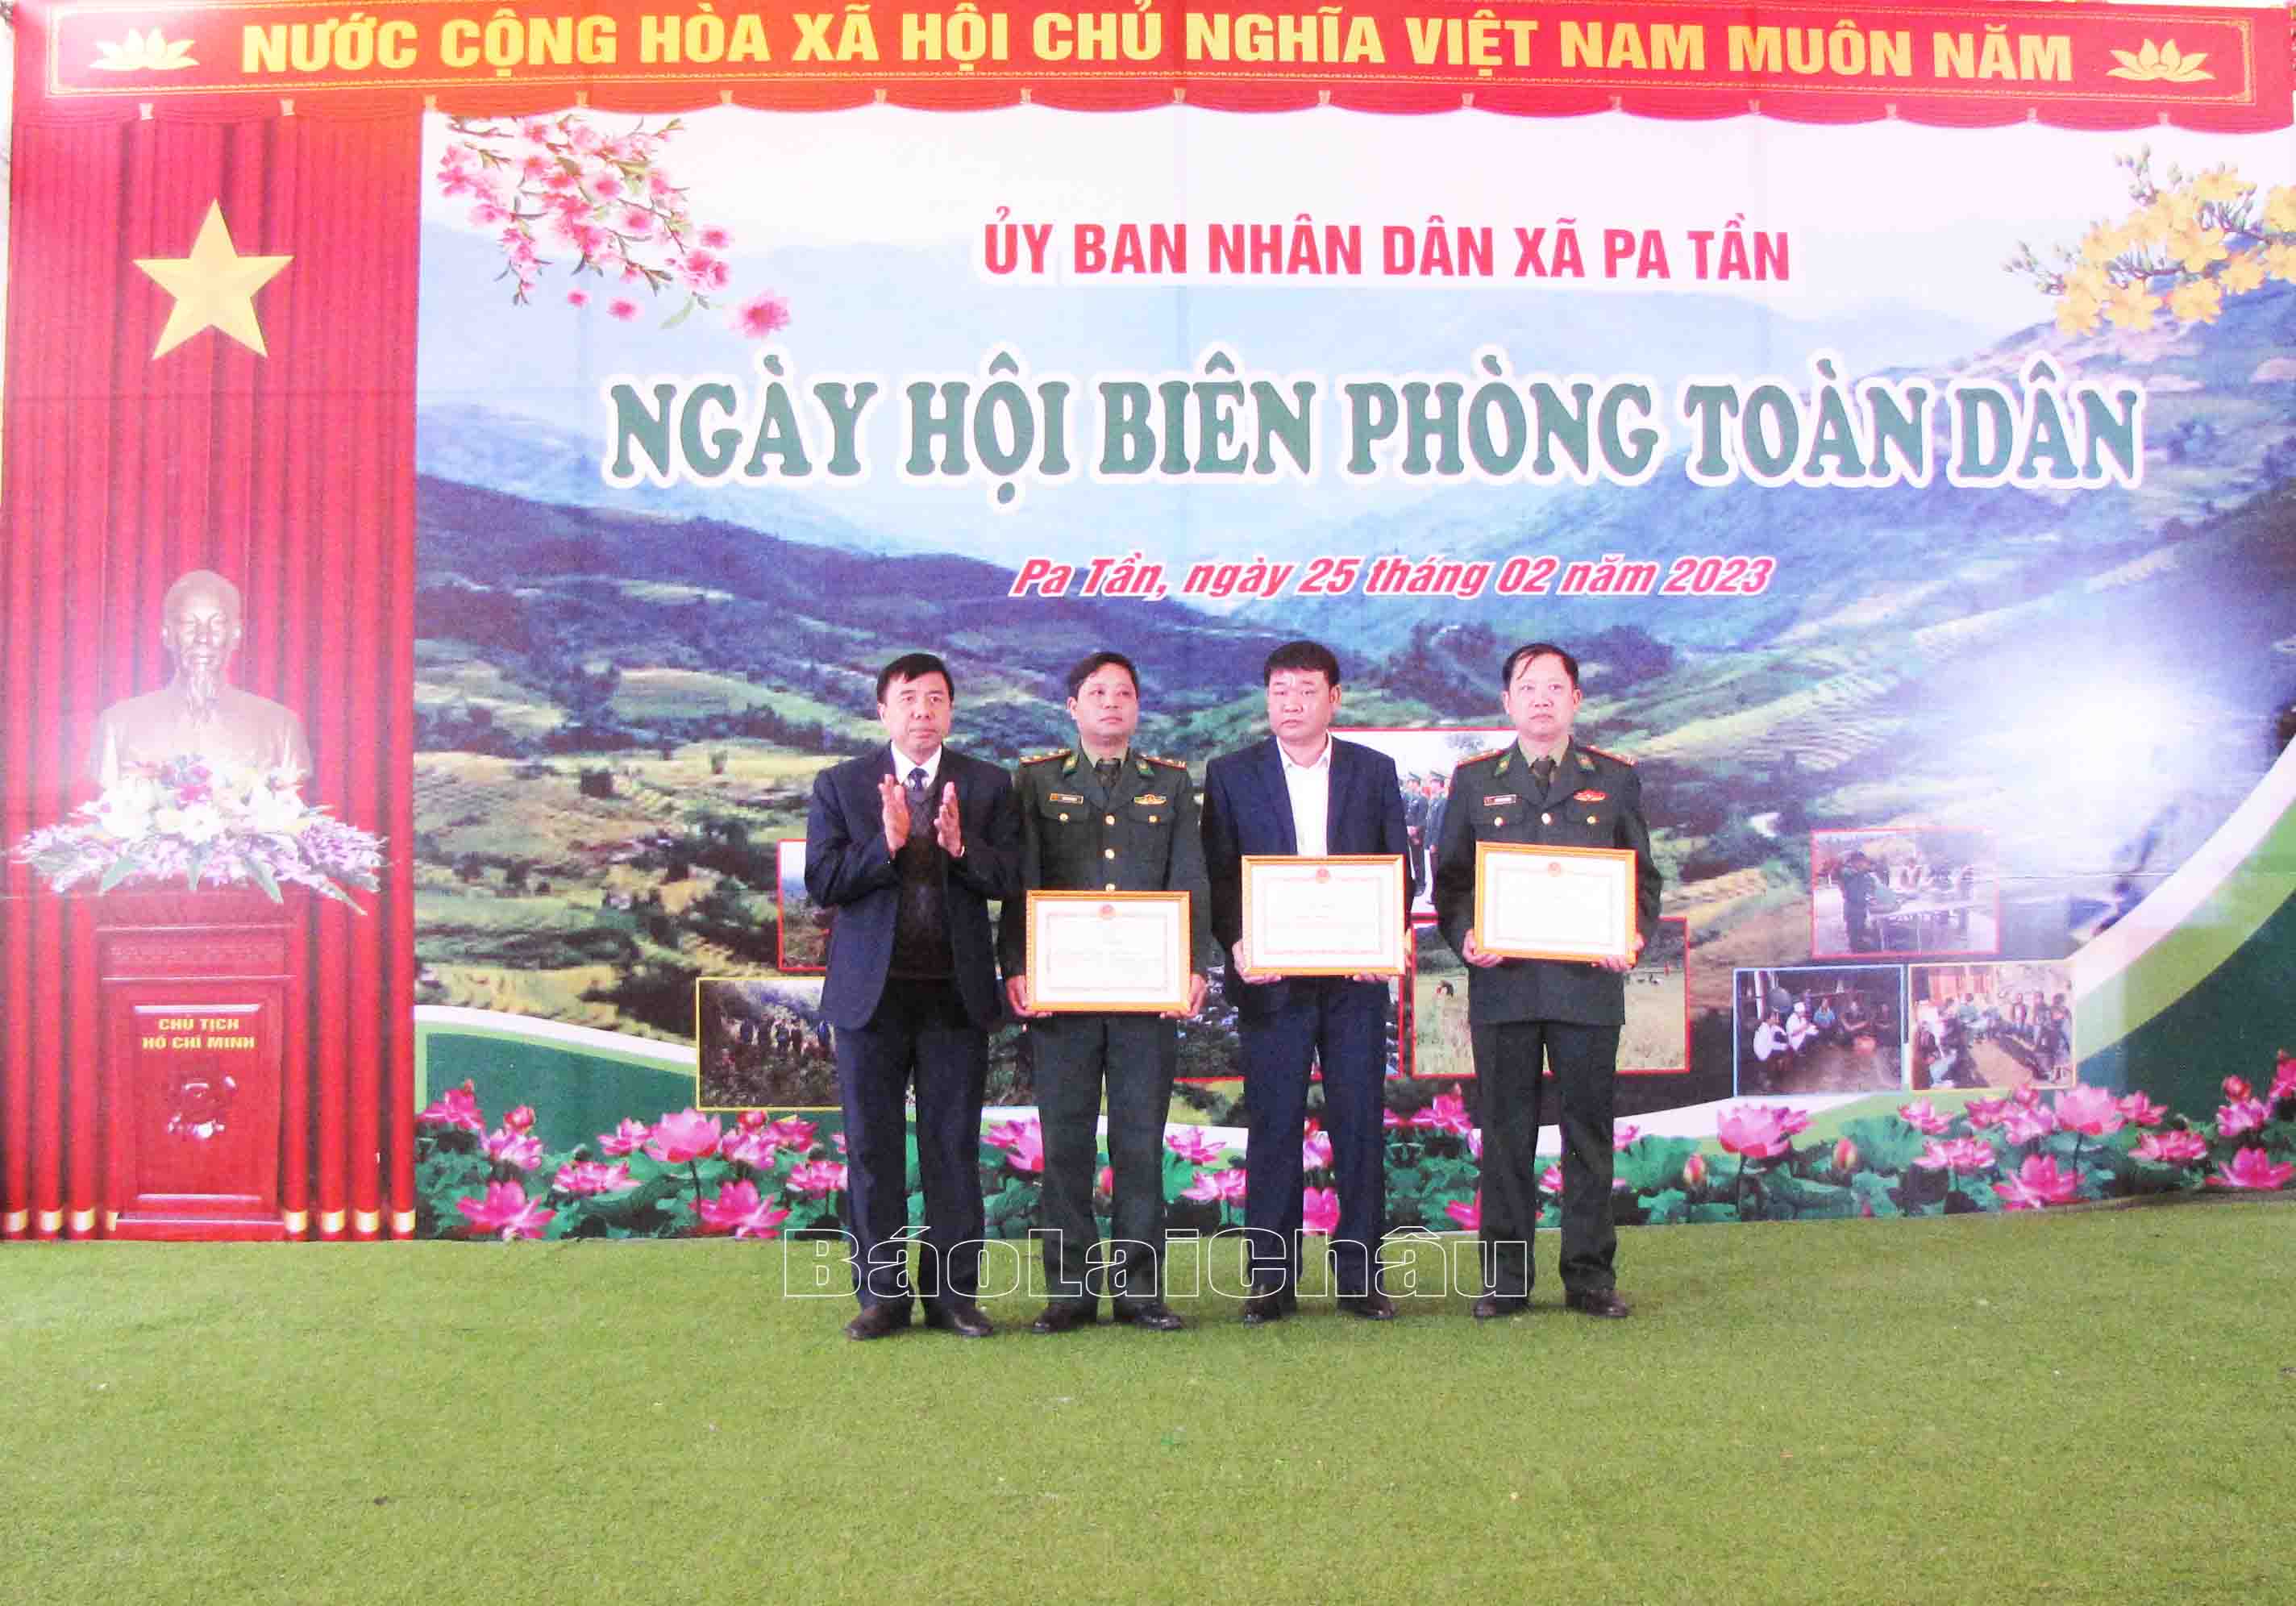 Lãnh đạo huyện Sìn Hồ tặng giấy khen cho các tập thể ó thành tích xuất sắc trong tham gia bảo vệ chủ quyền lãnh thổ, an ninh biên giới năm 2022.